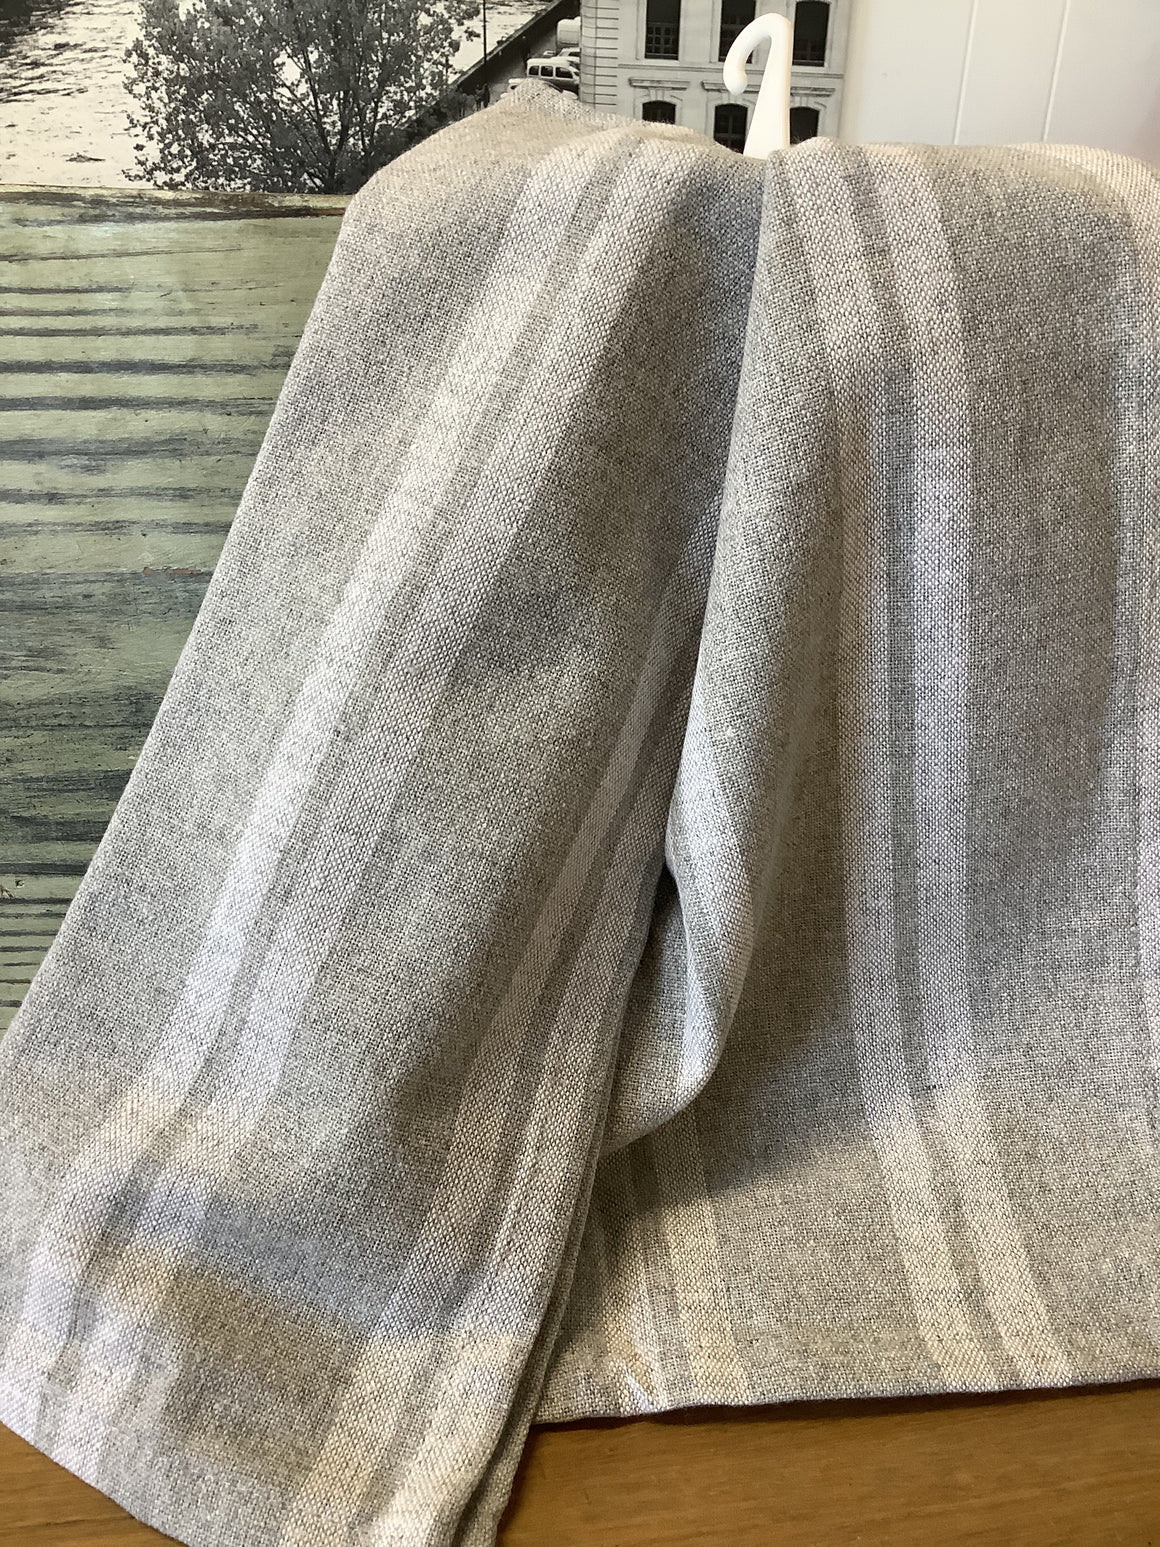 French Cotton Tea towel - Grey & White Stripe